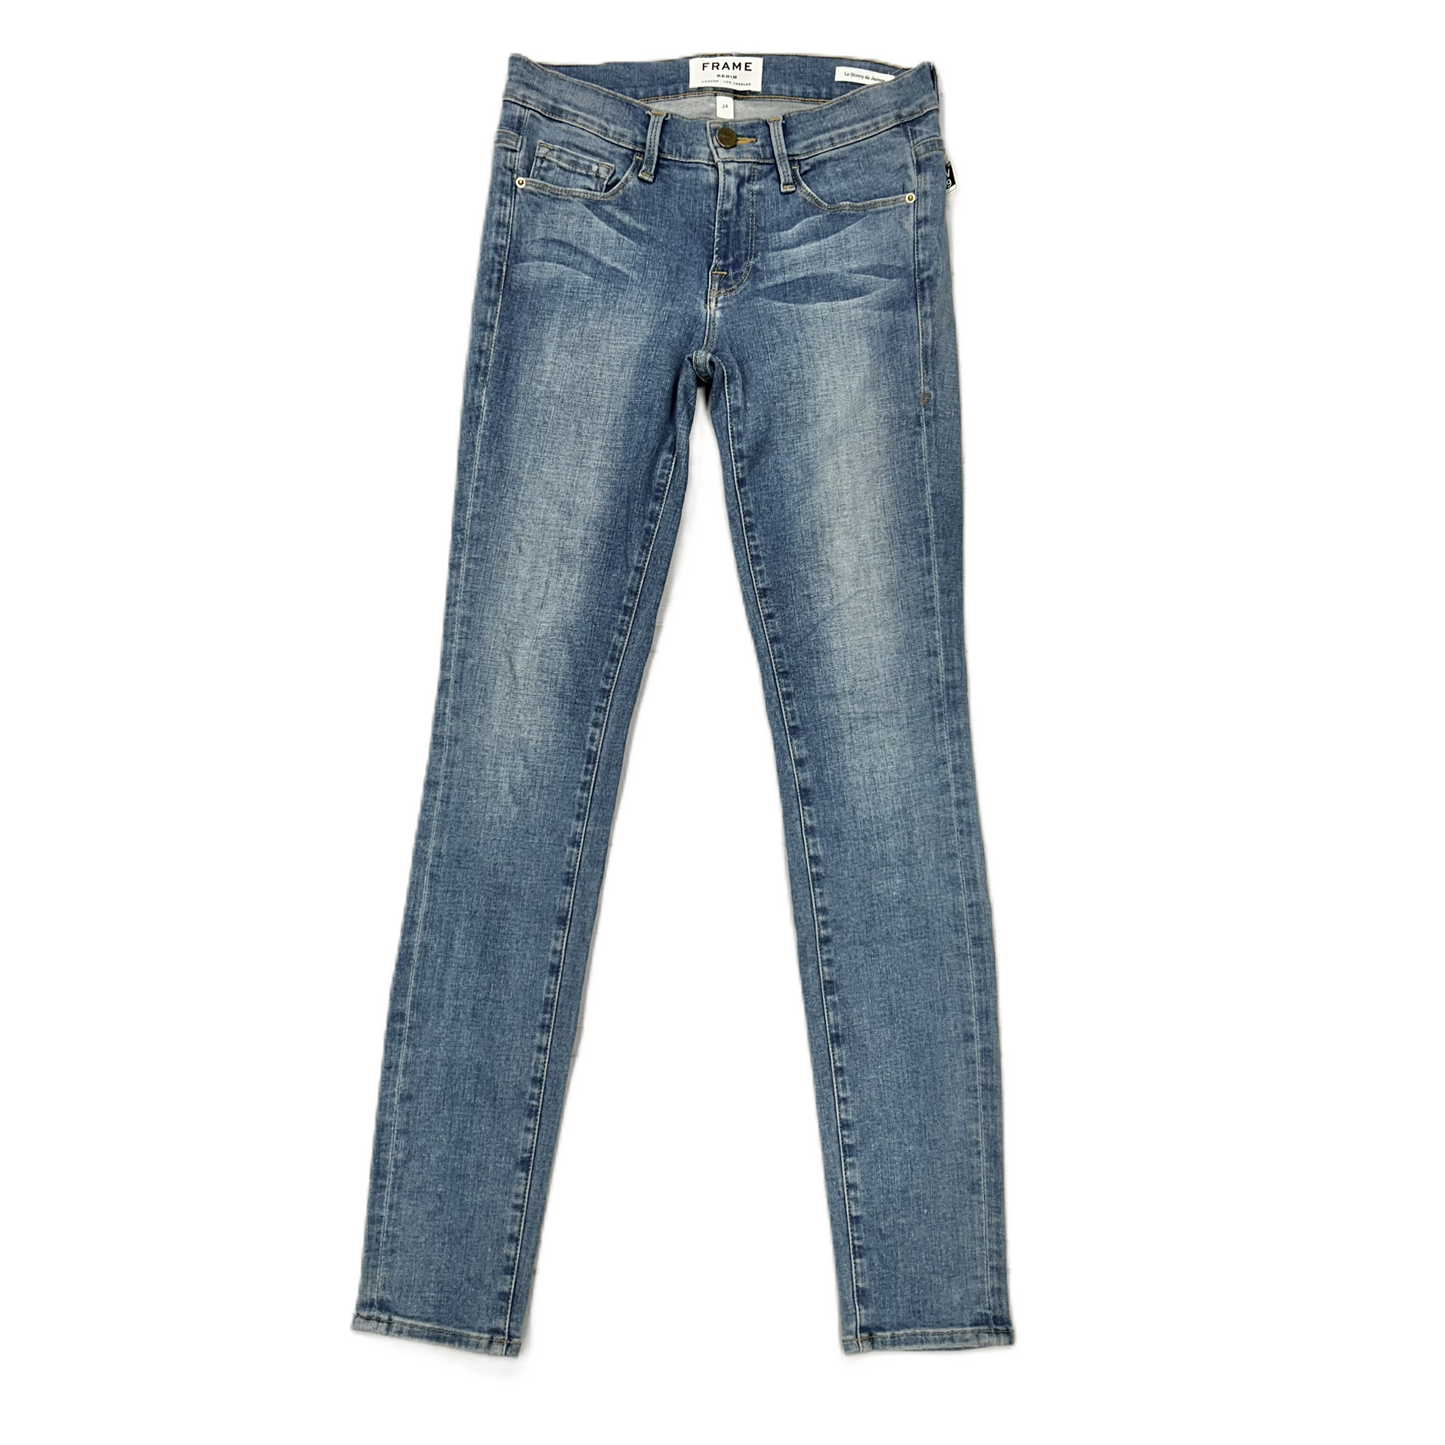 Denim Blue Jeans Designer By Frame, Size: 00